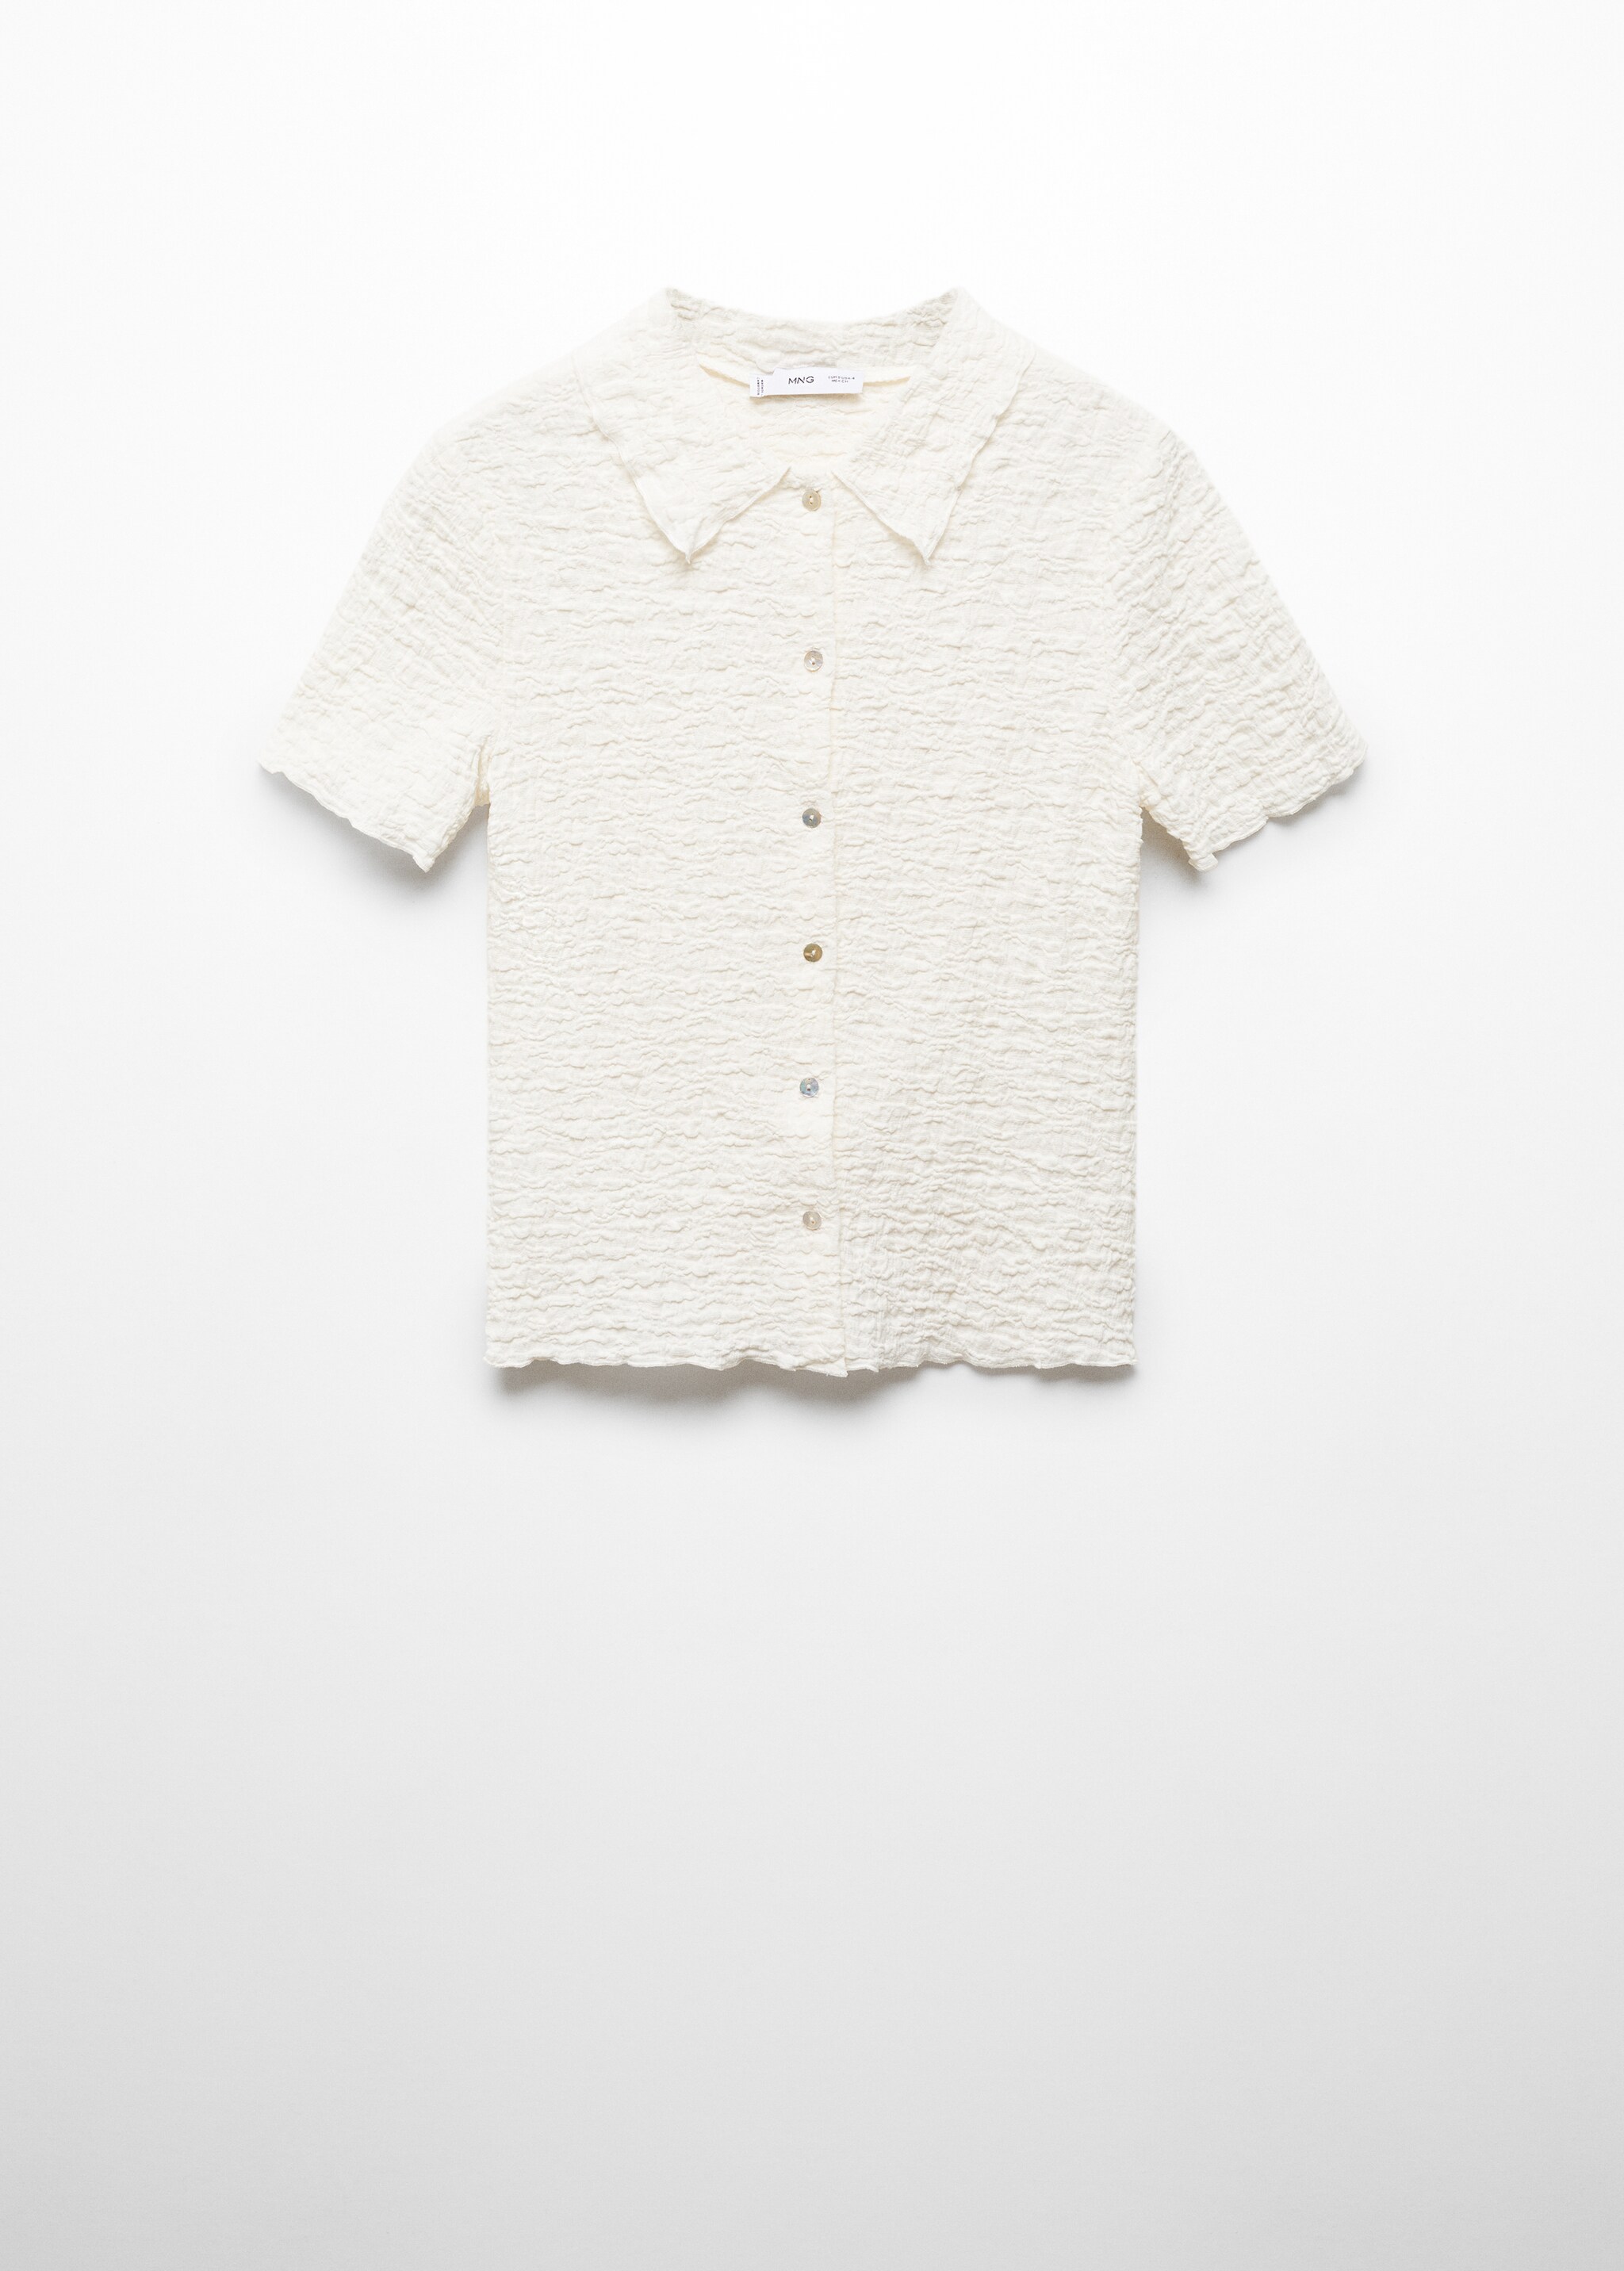 Camiseta algodón textura - Artículo sin modelo